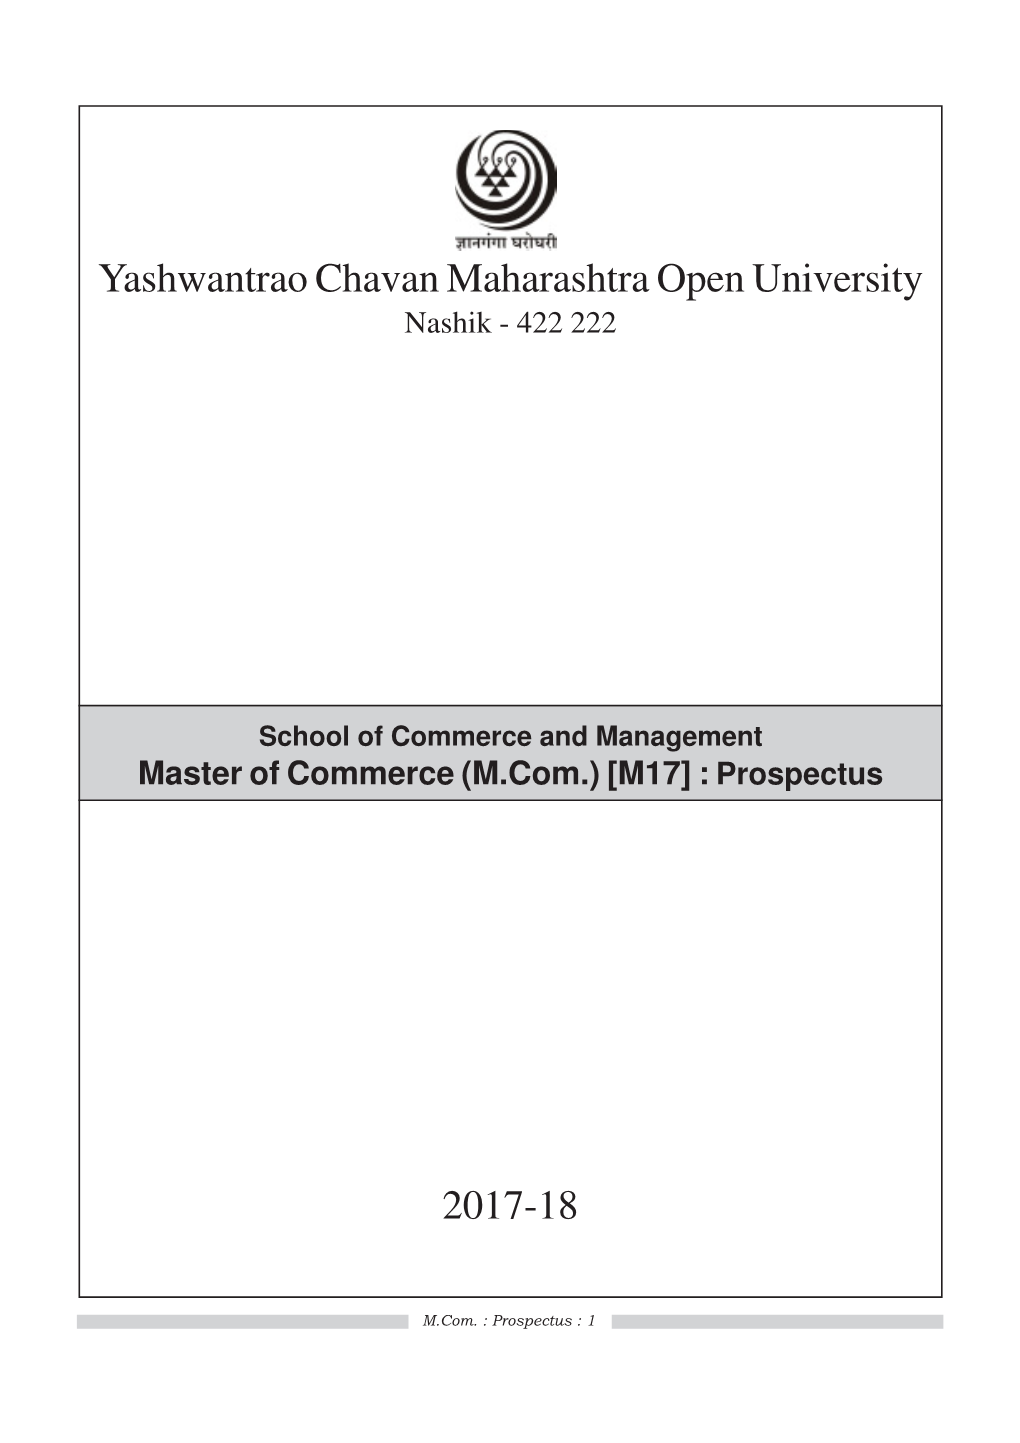 Yashwantrao Chavan Maharashtra Open University 2017-18